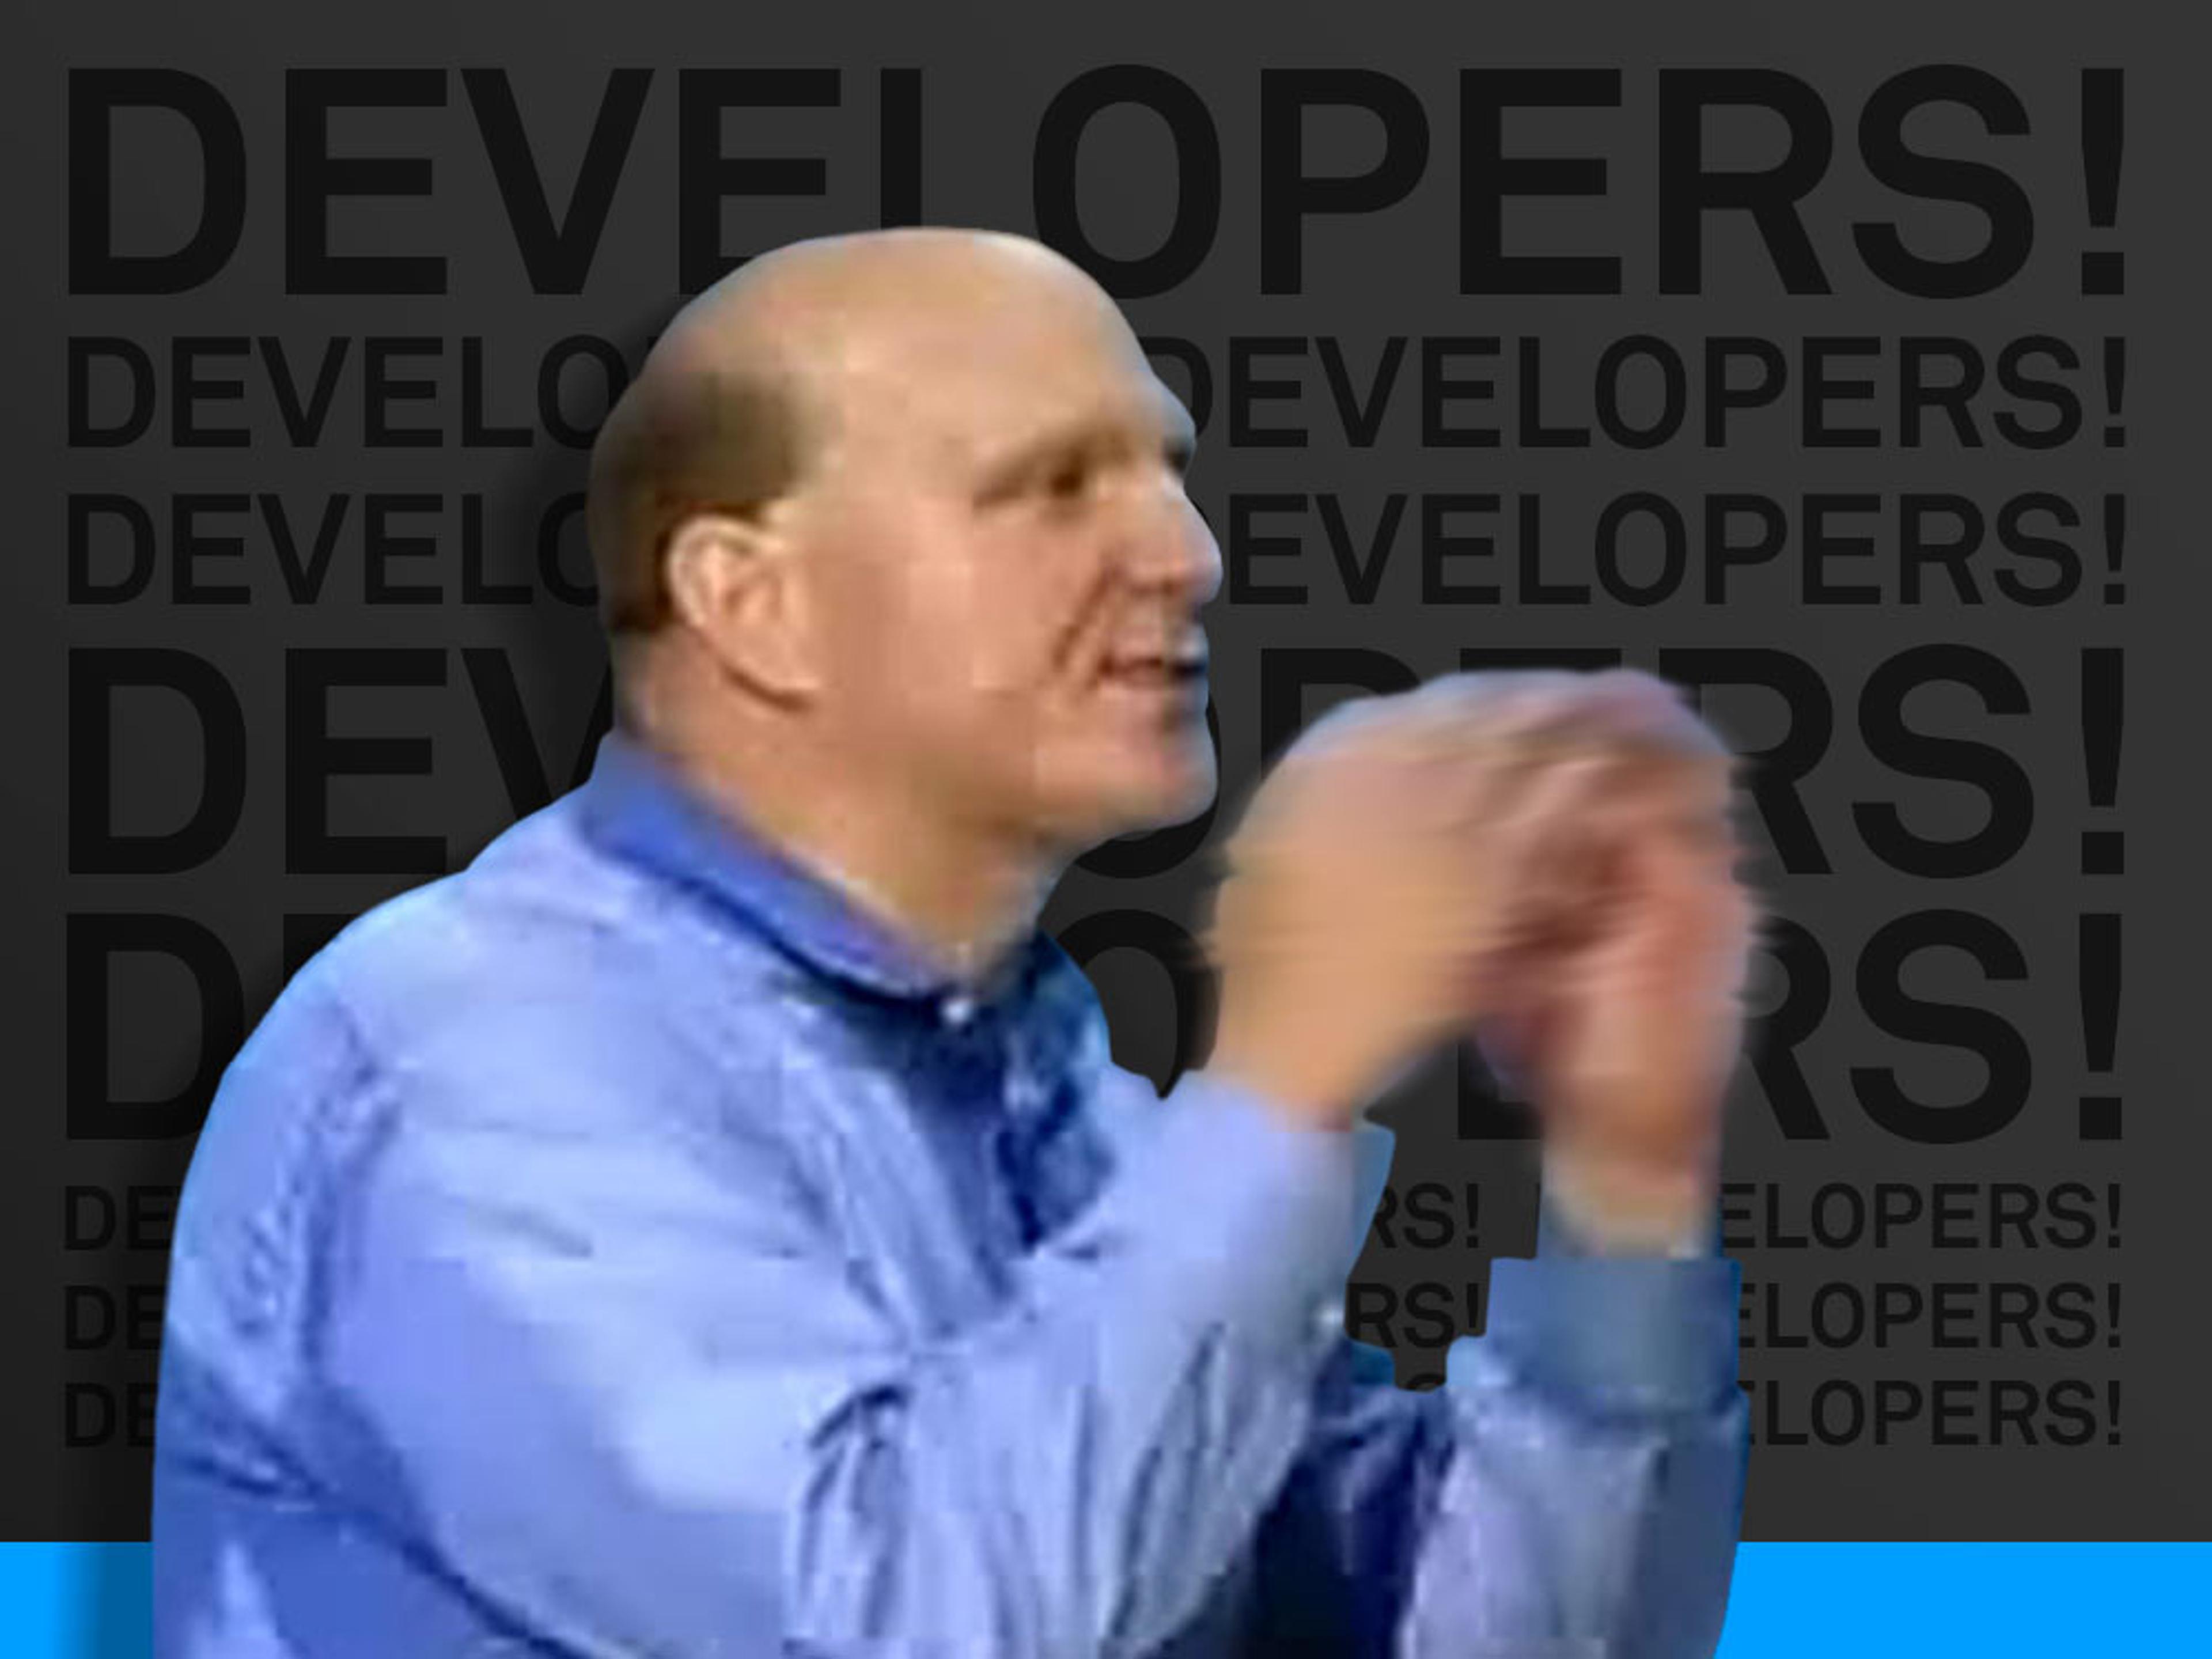 developers, developers, developers